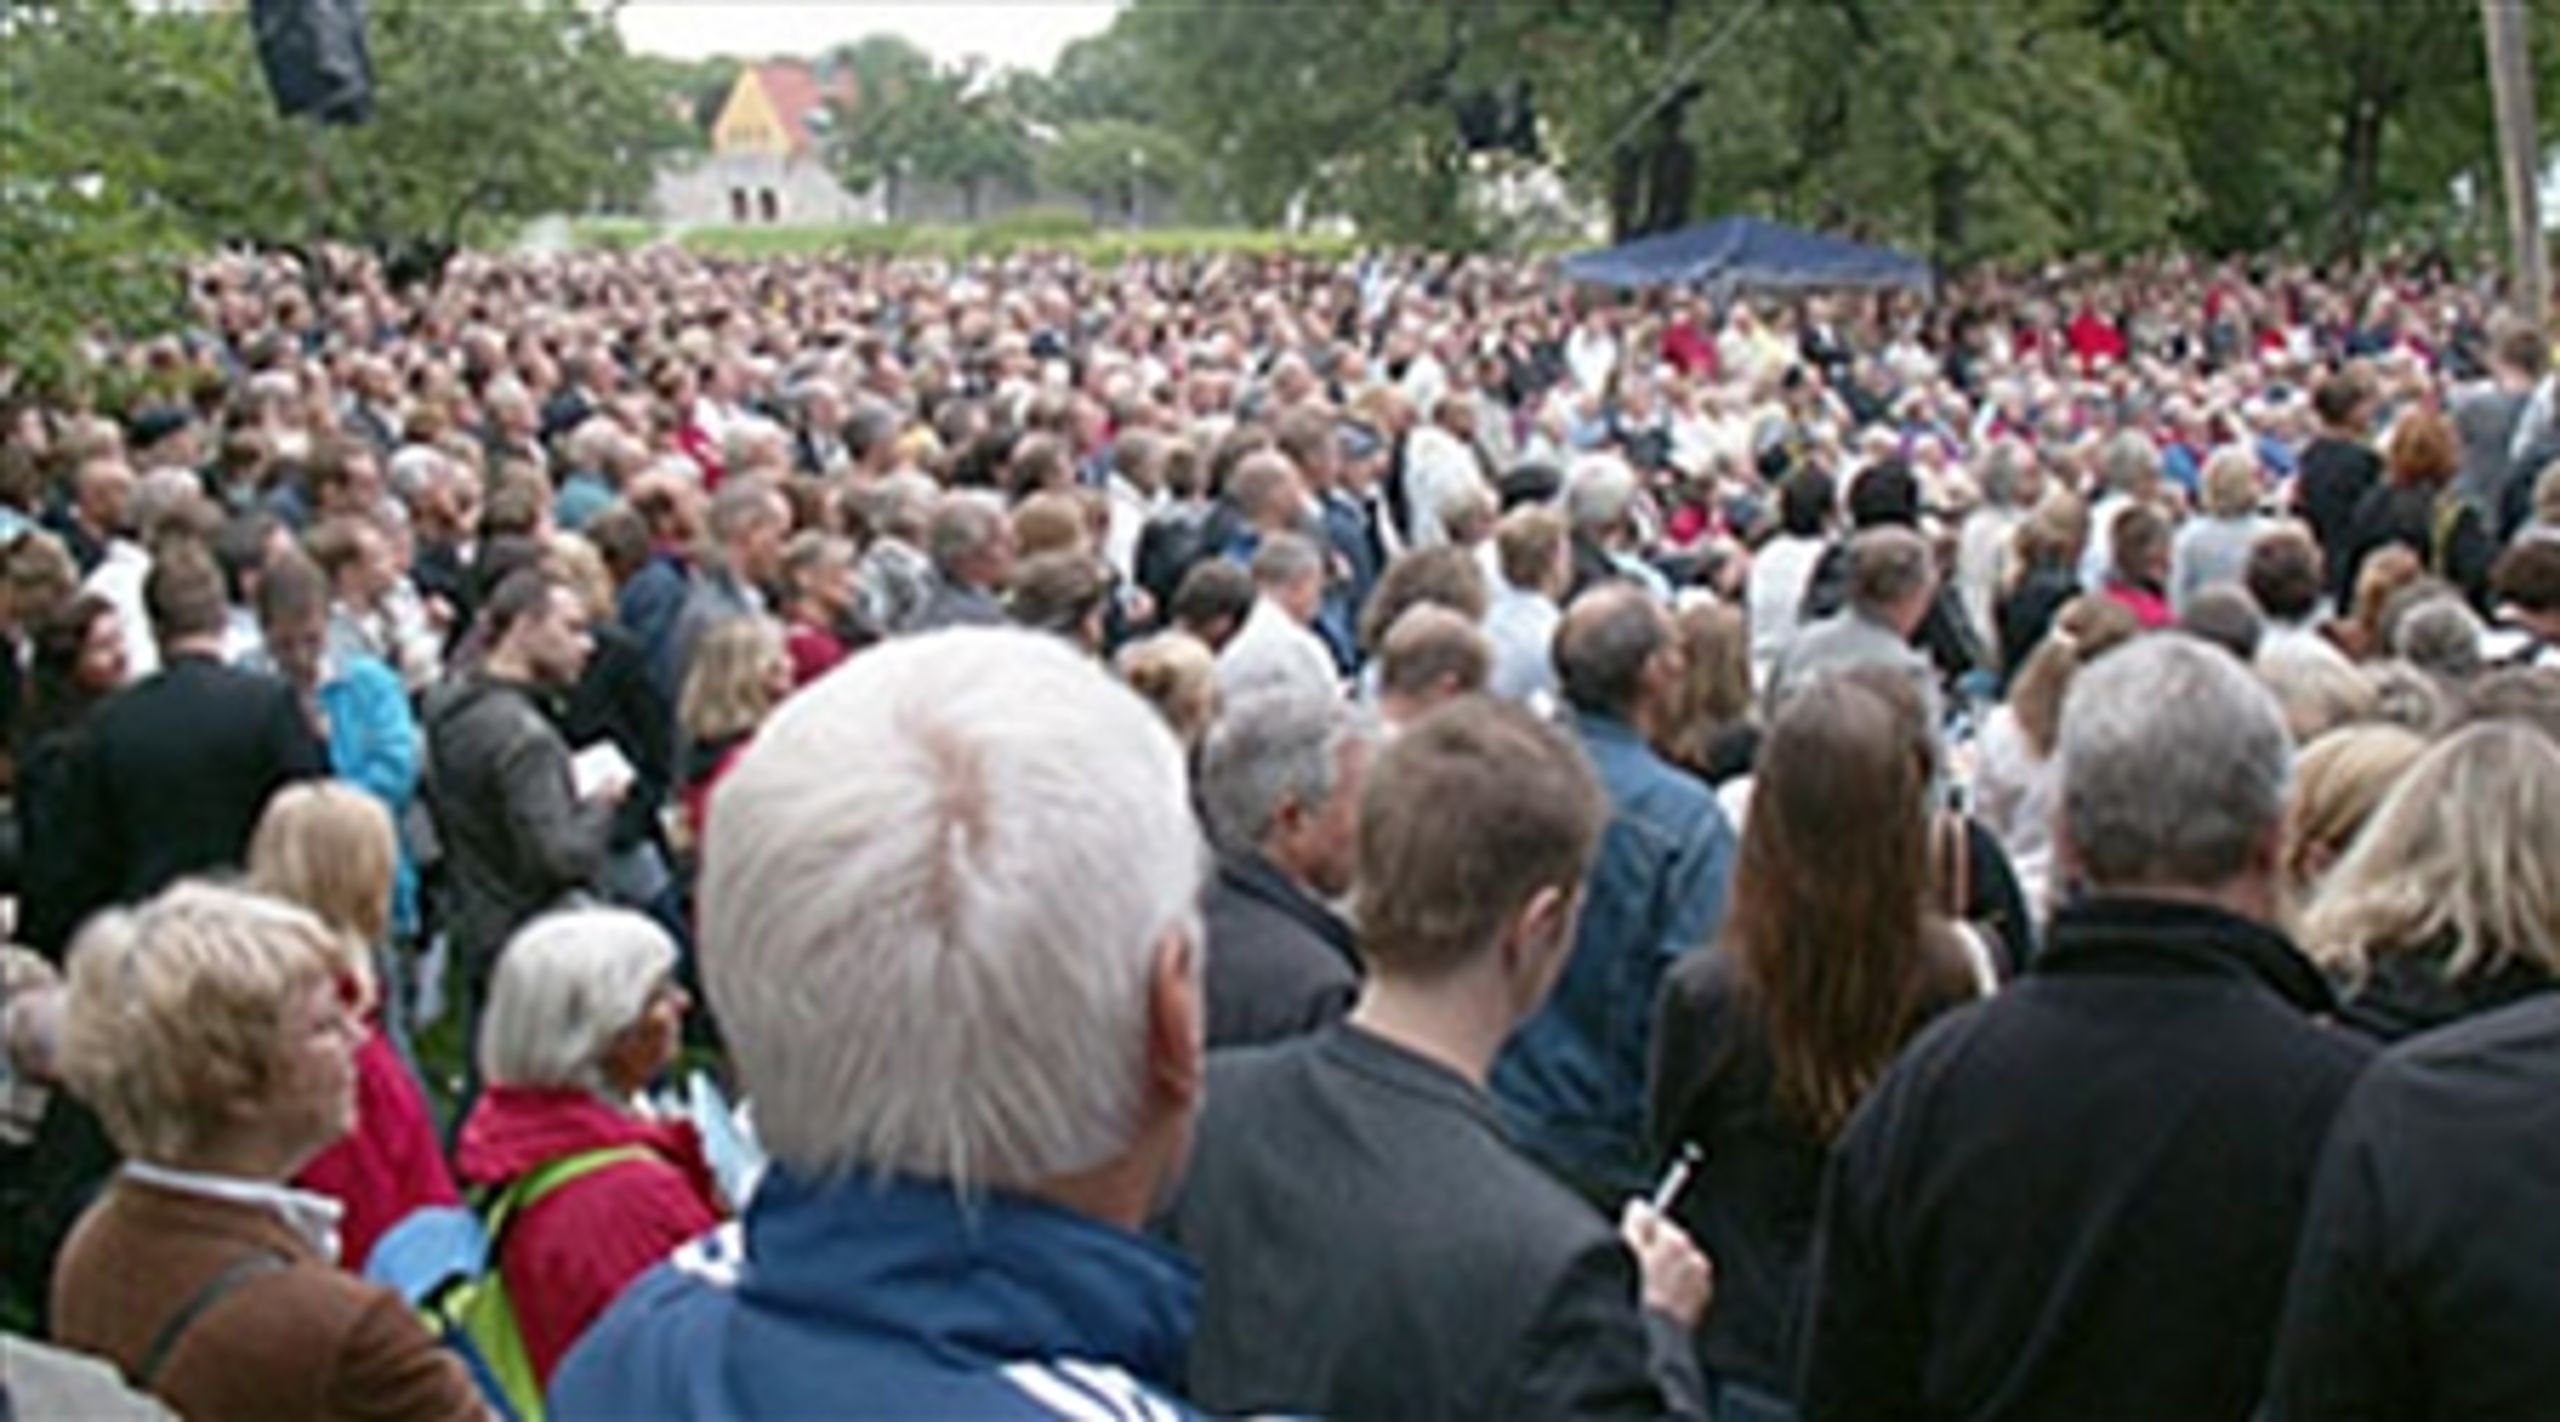 Tusindvis af mennesker samles hvert år i Almedalen på Gotland for at høre politikere debattere og tale.